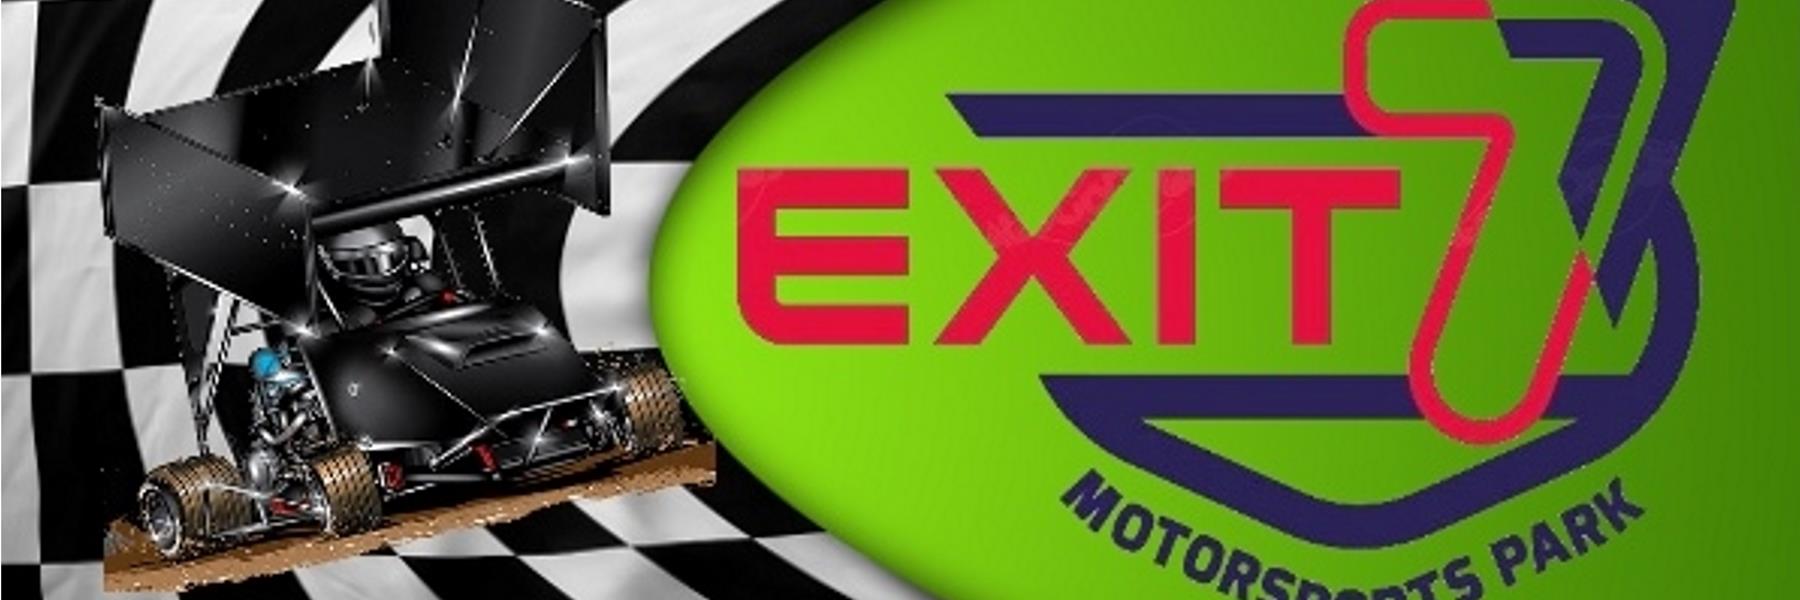 6/4/2022 - Exit 7 Motorsports Park